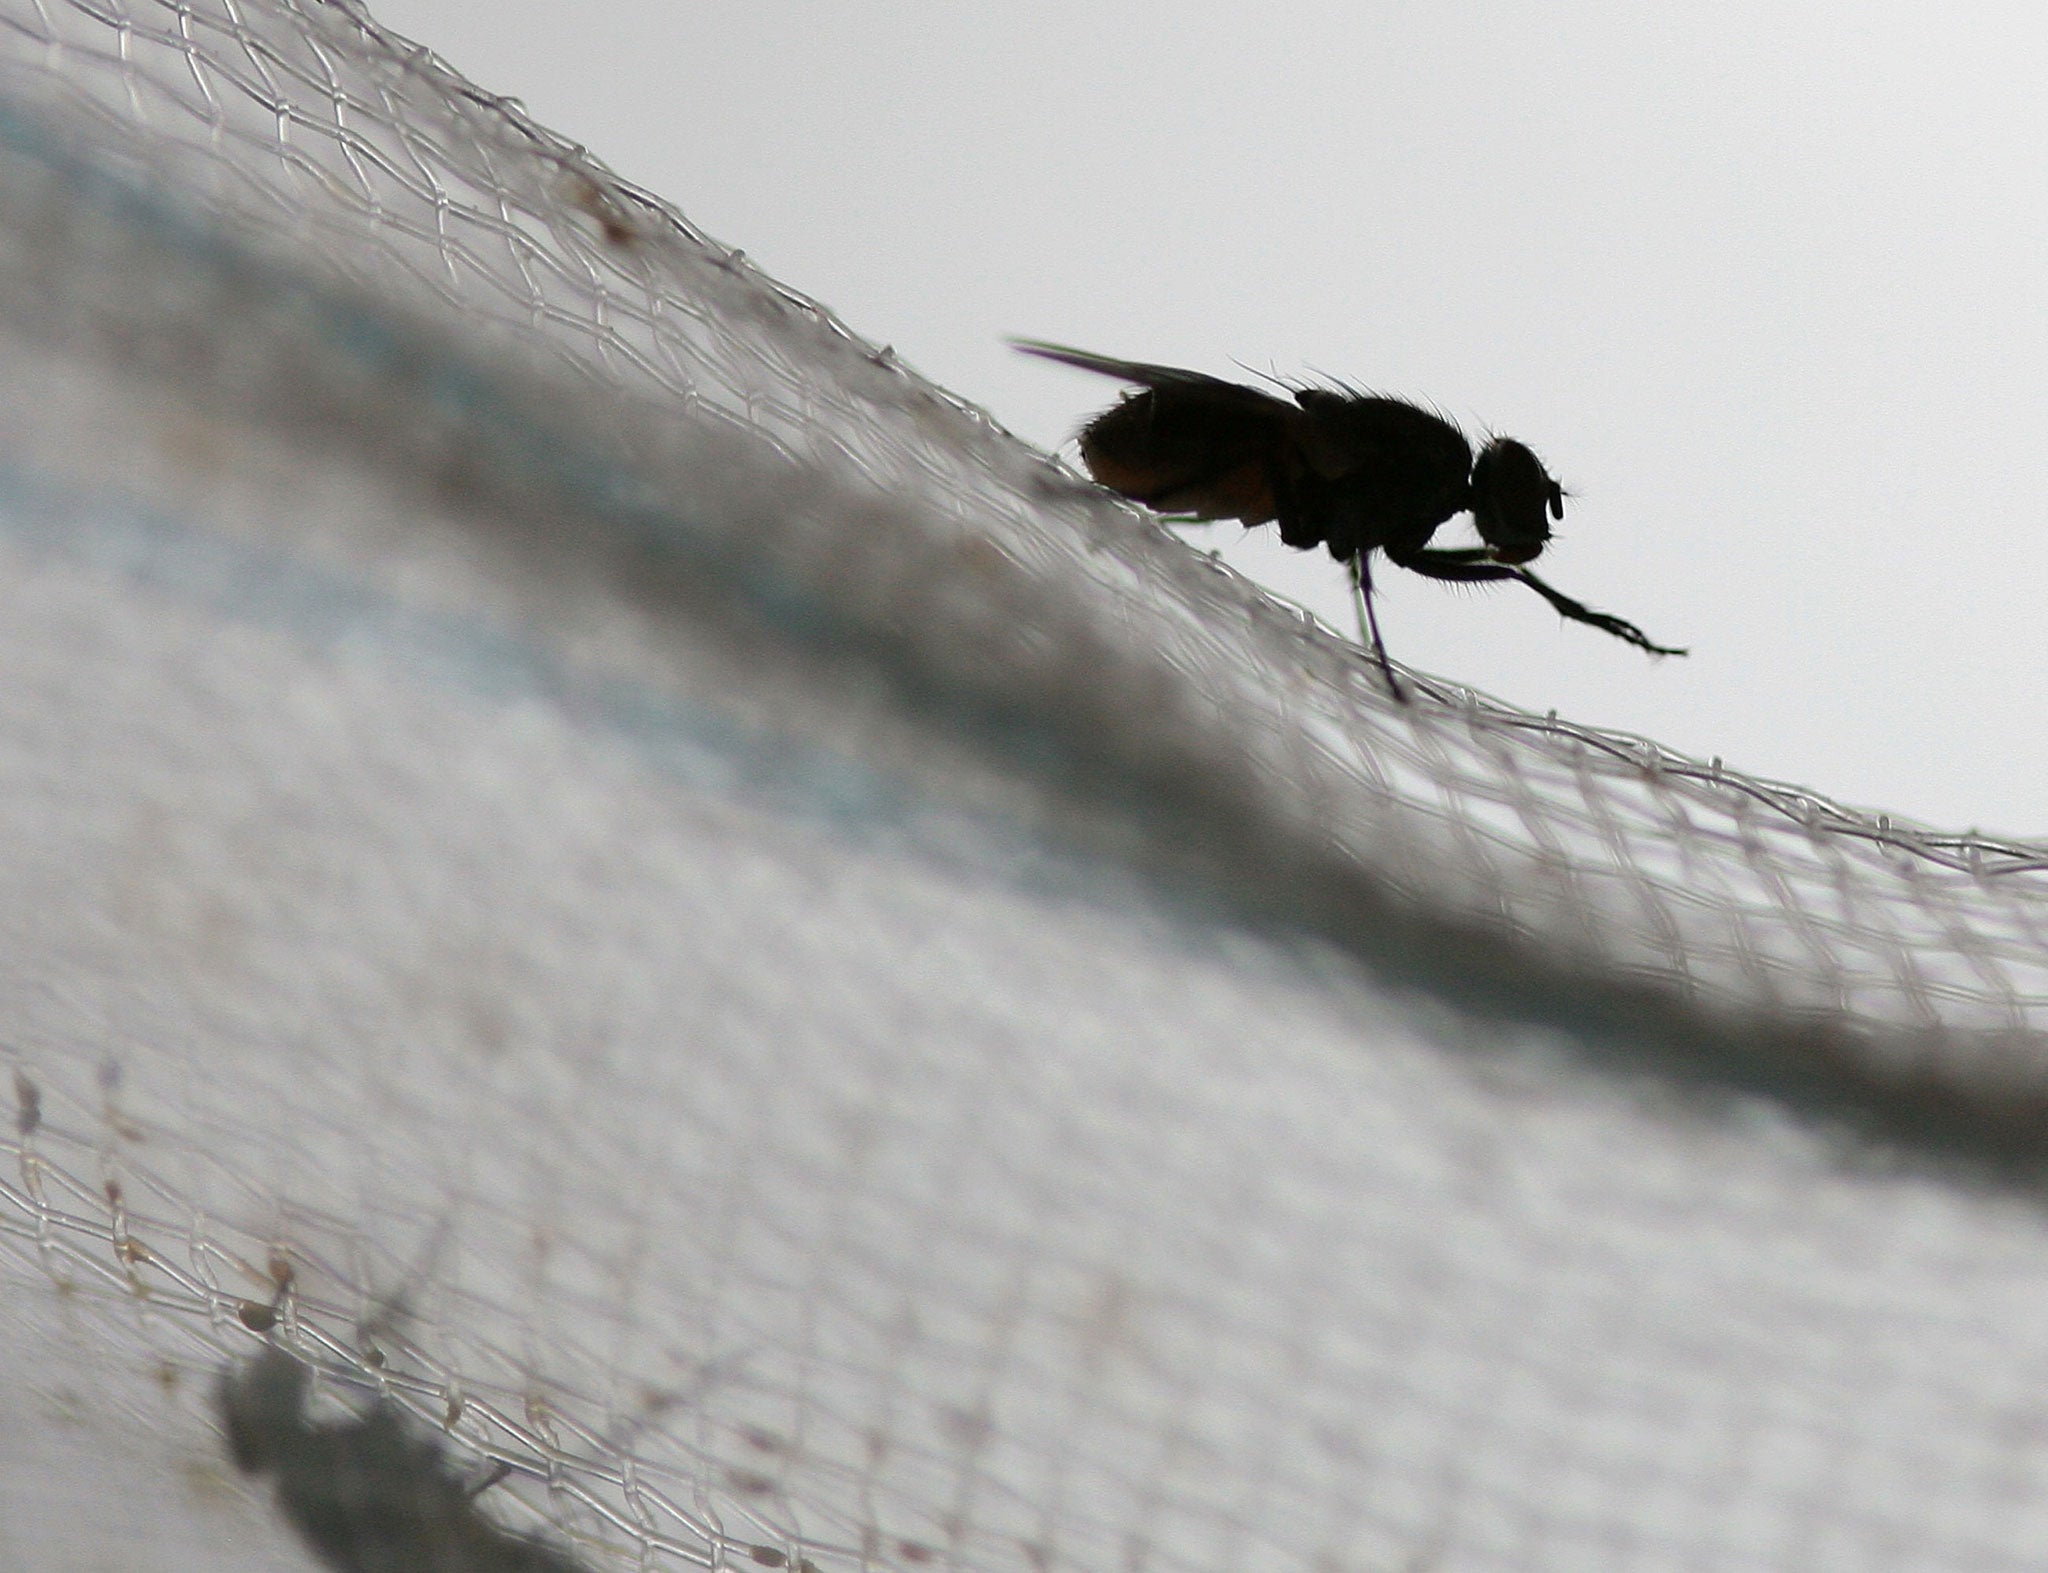 Sexually frustrated fruit flies die earlier